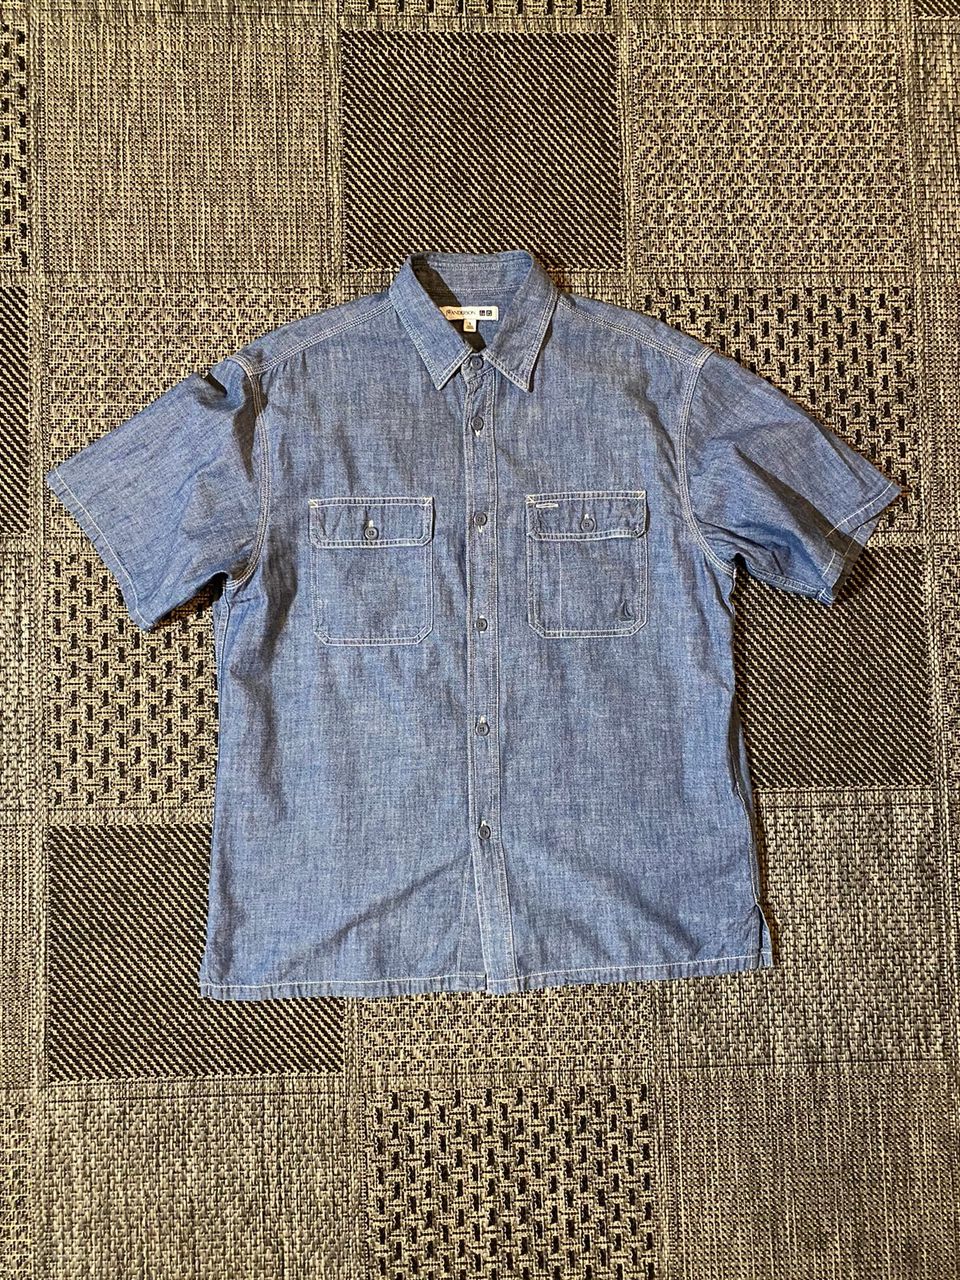 UNIQLO JW ANDERSON mens M reg (S tag) quality chambray shirt 100%cotton